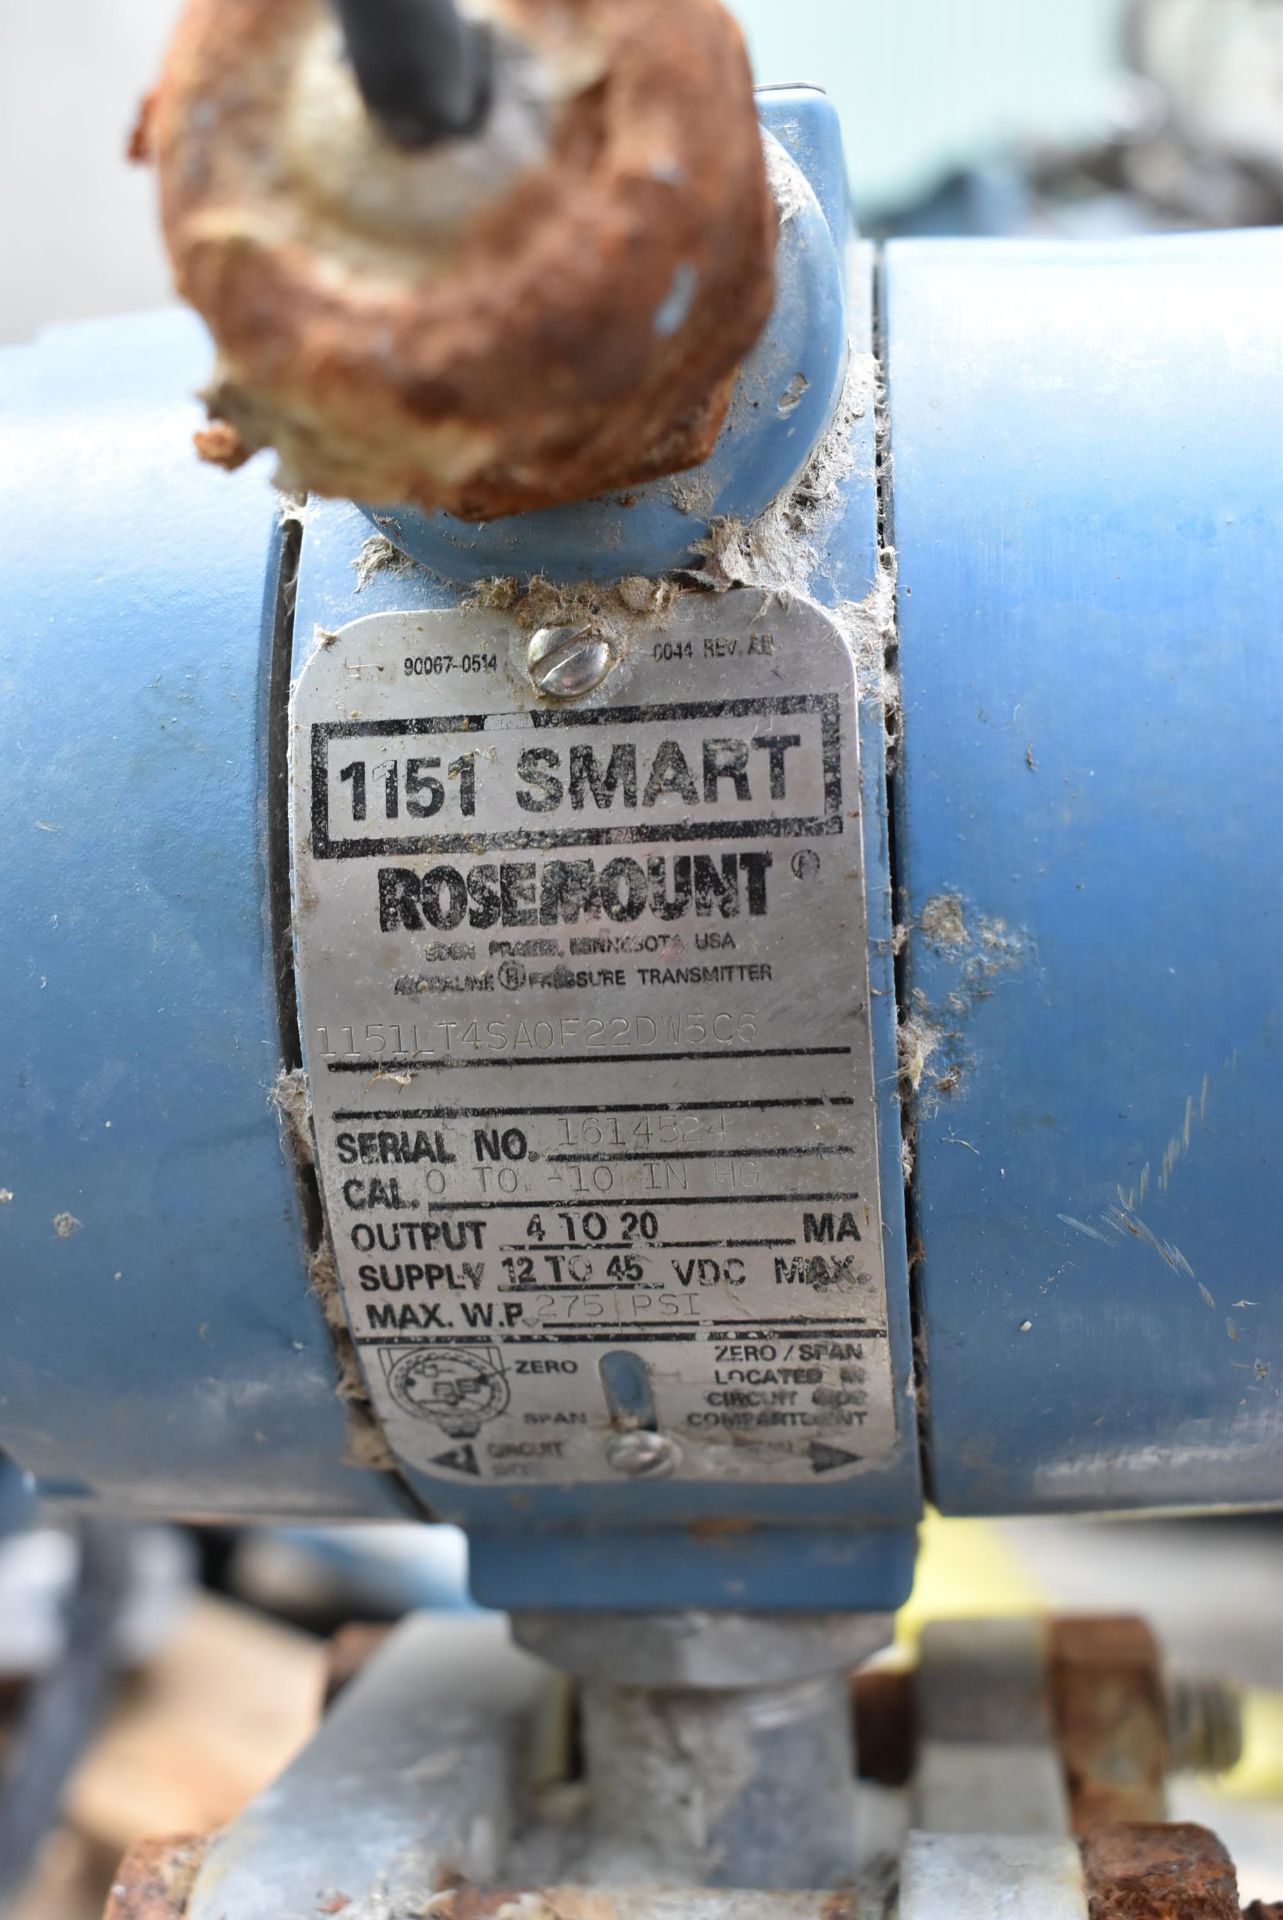 LOT/ ROSEMOUNT 1151 SMART DIGITAL PRESSURE TRANSMITTERS, ROSEMOUNT CONTROLLERS [RIGGING FEE FOR - Image 6 of 6